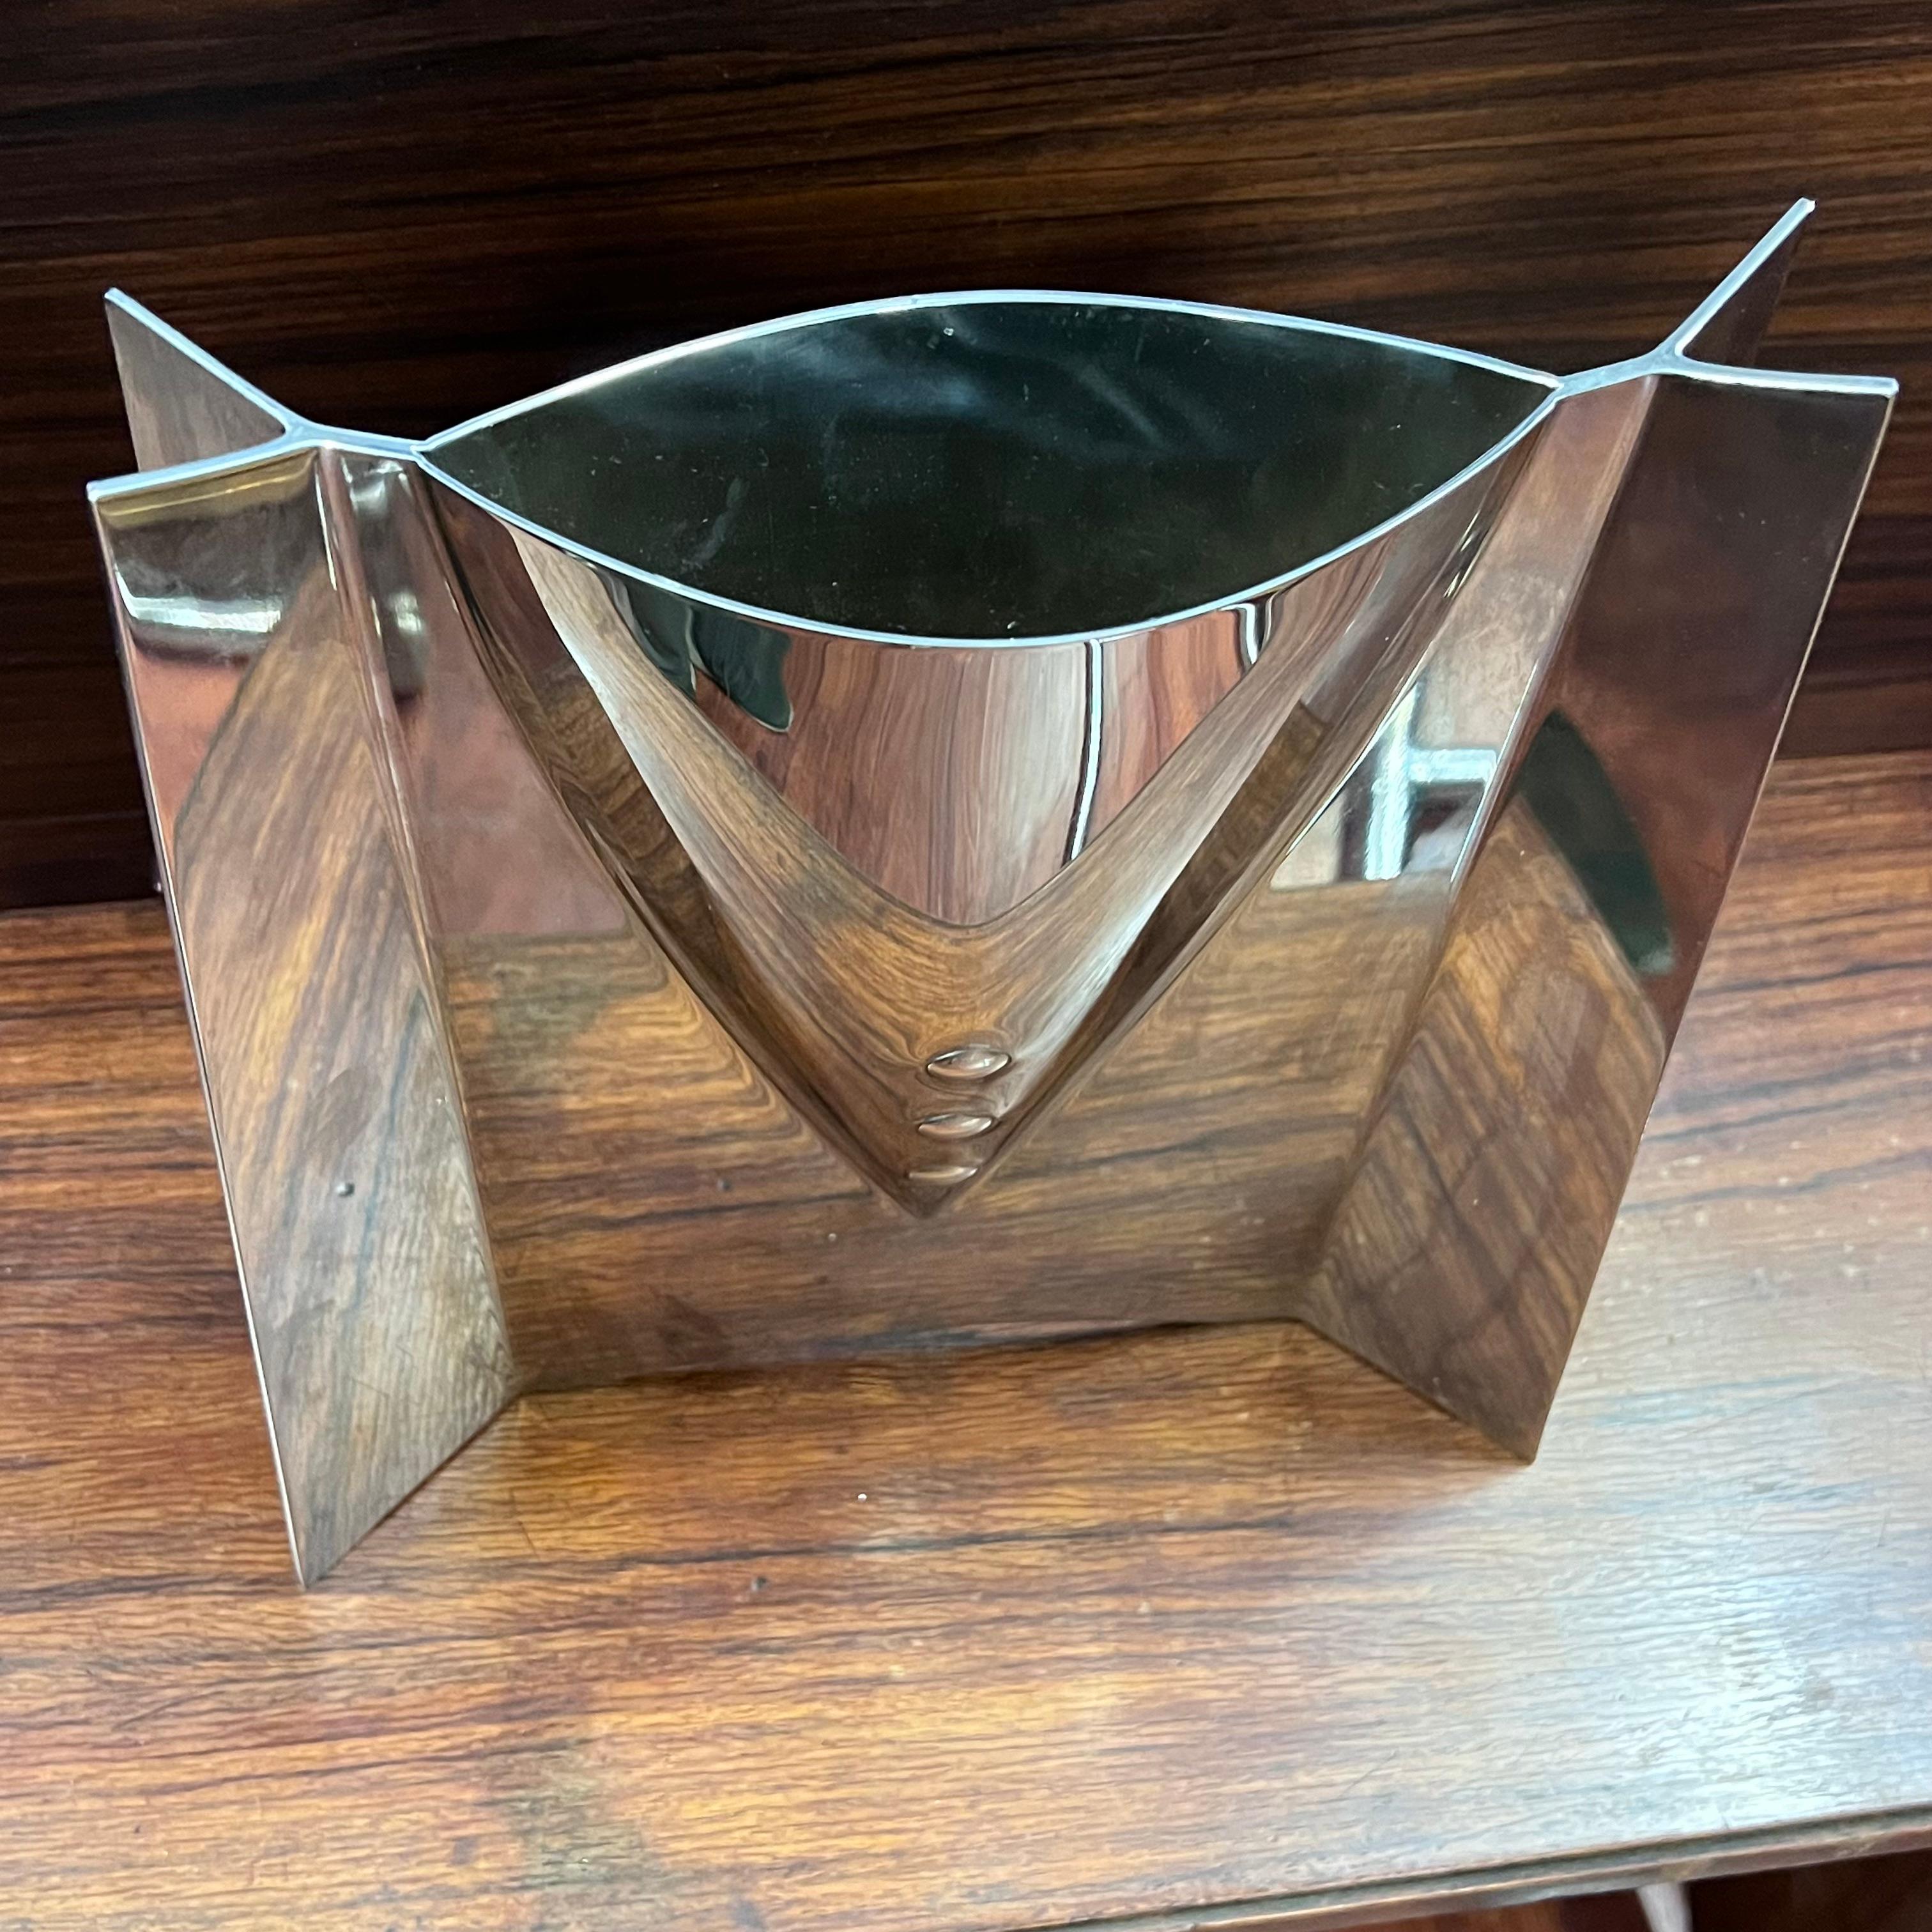 Un vase en acier particulier, réalisé par Davorin Horvat sur commande de Zepter.
Probablement commandé par l'entreprise pour l'offrir en prix ou en cadeau.

